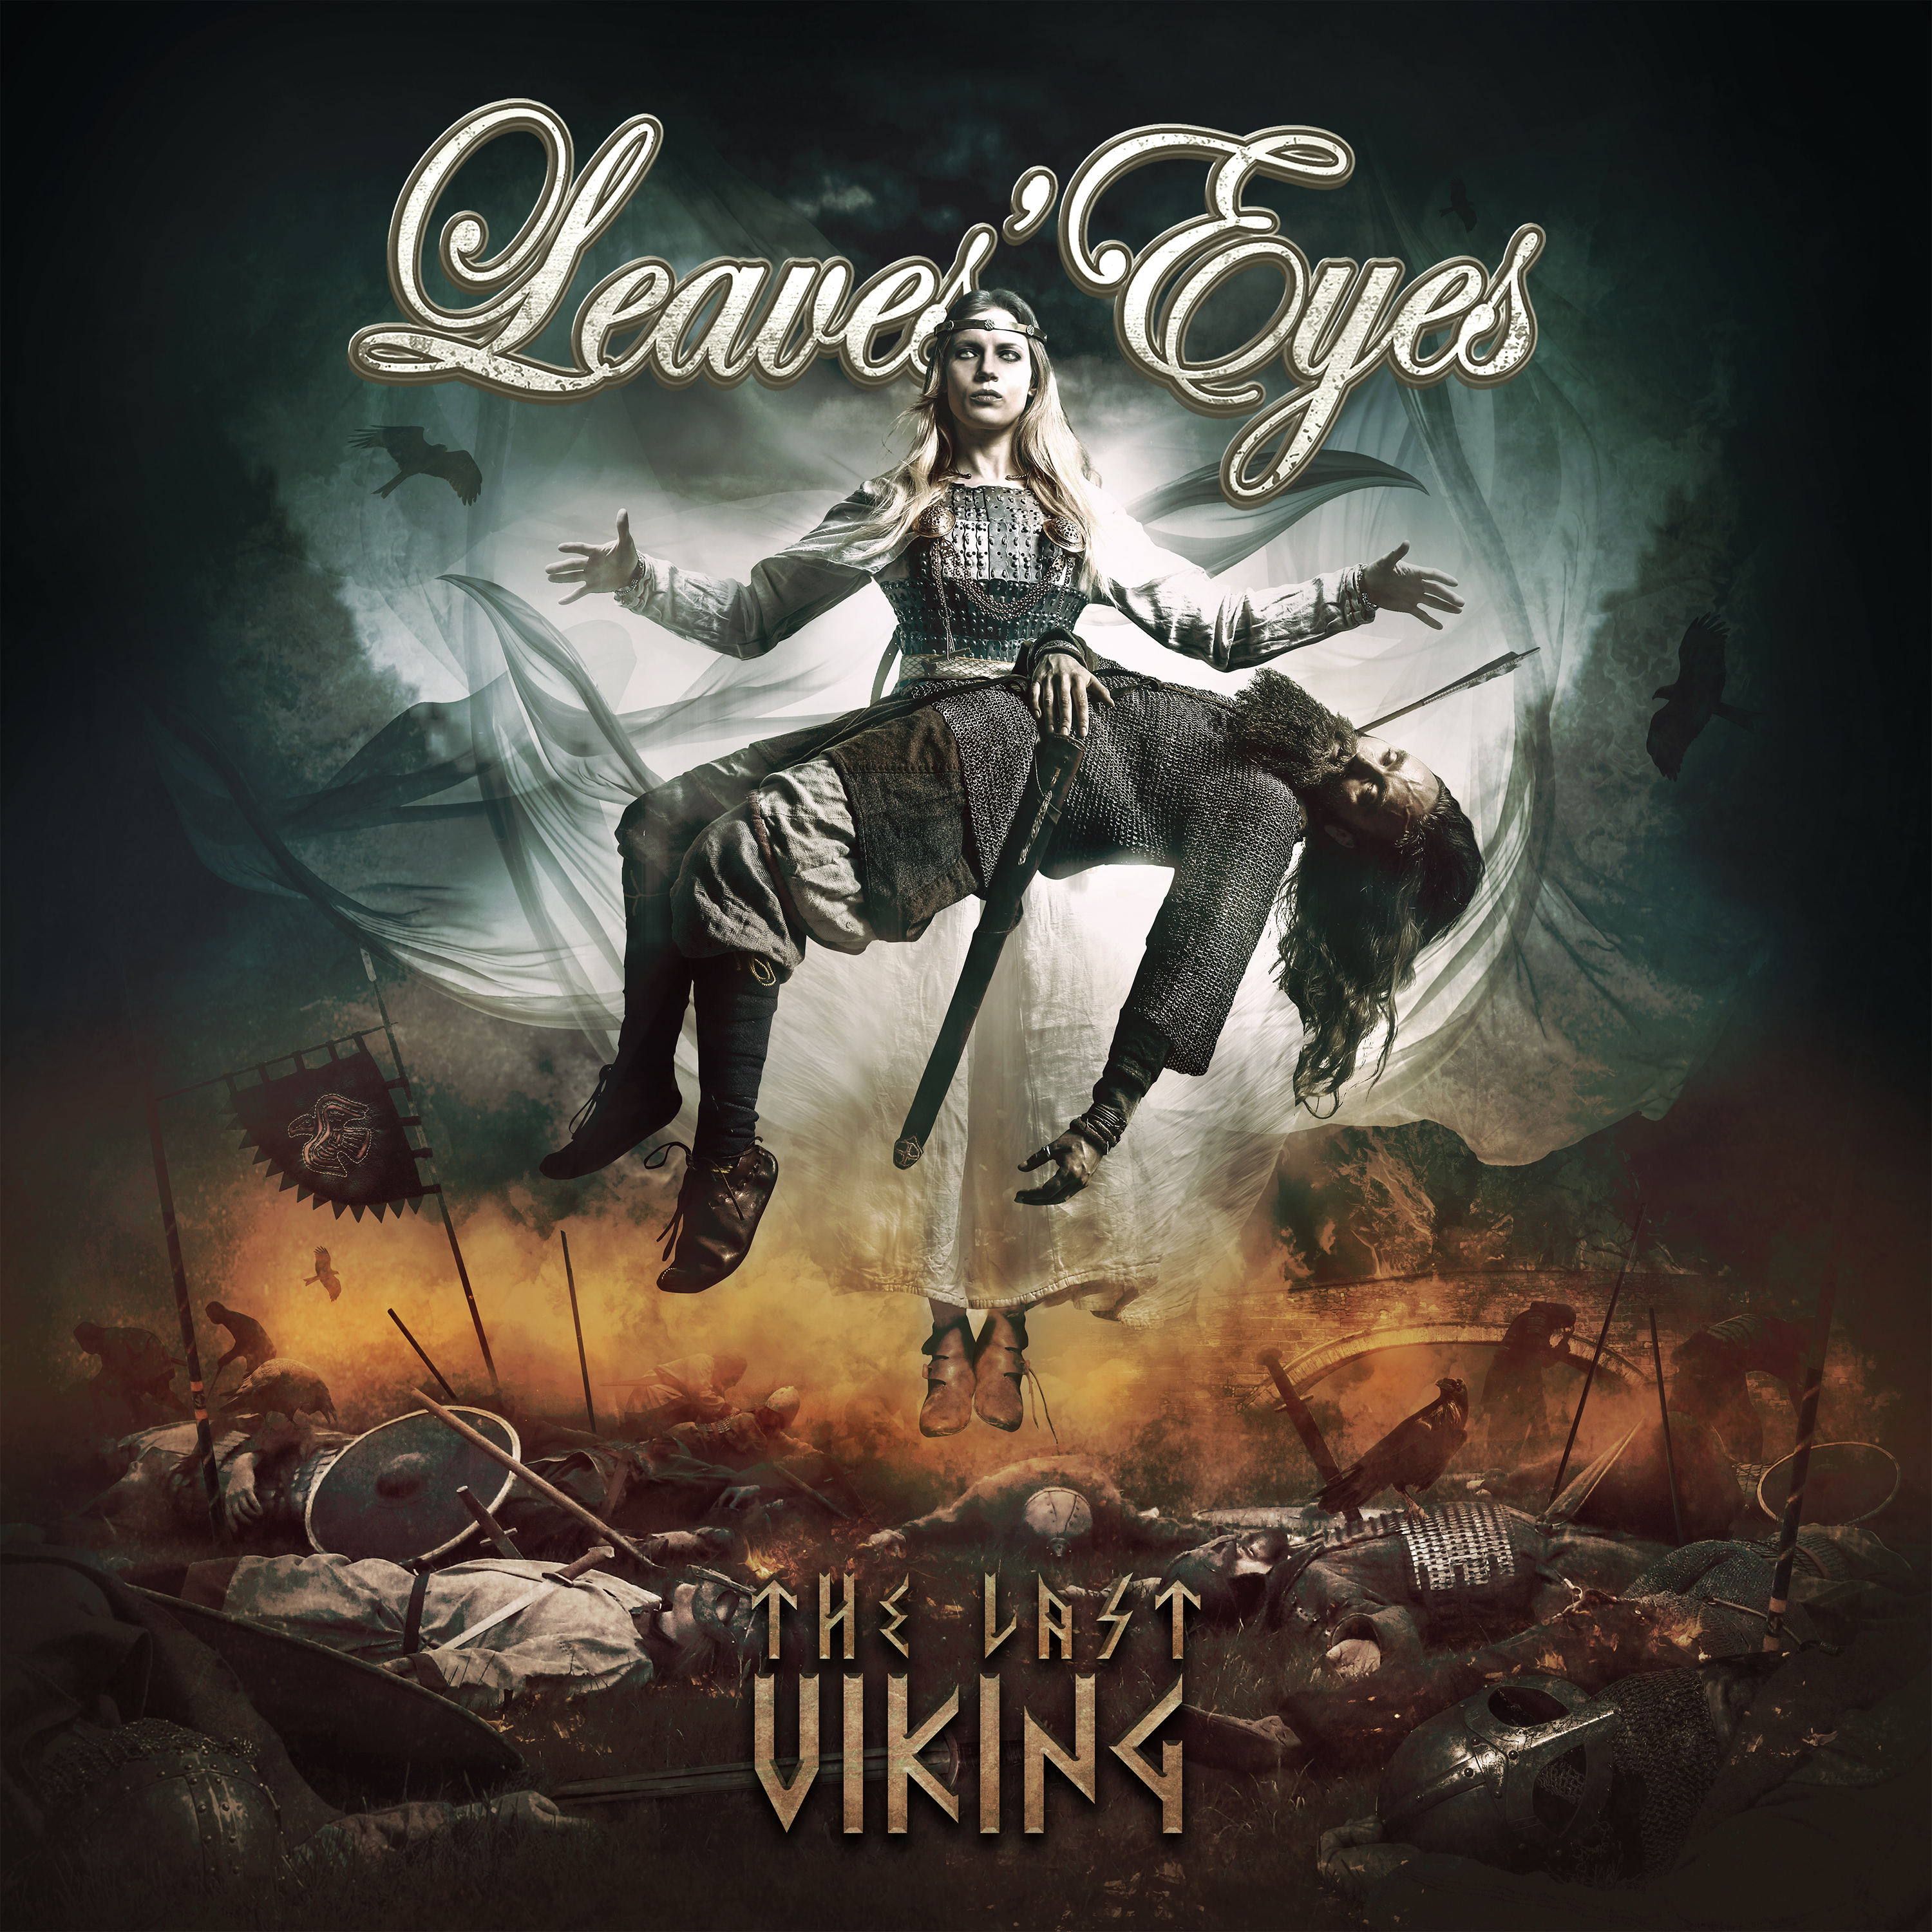 Leaves eyes myths of fate. Leaves Eyes the last Viking. Leaves’ Eyes 2020 - the last Viking. Leaves' Eyes альбомы. Leaves' Eyes "King of Kings".